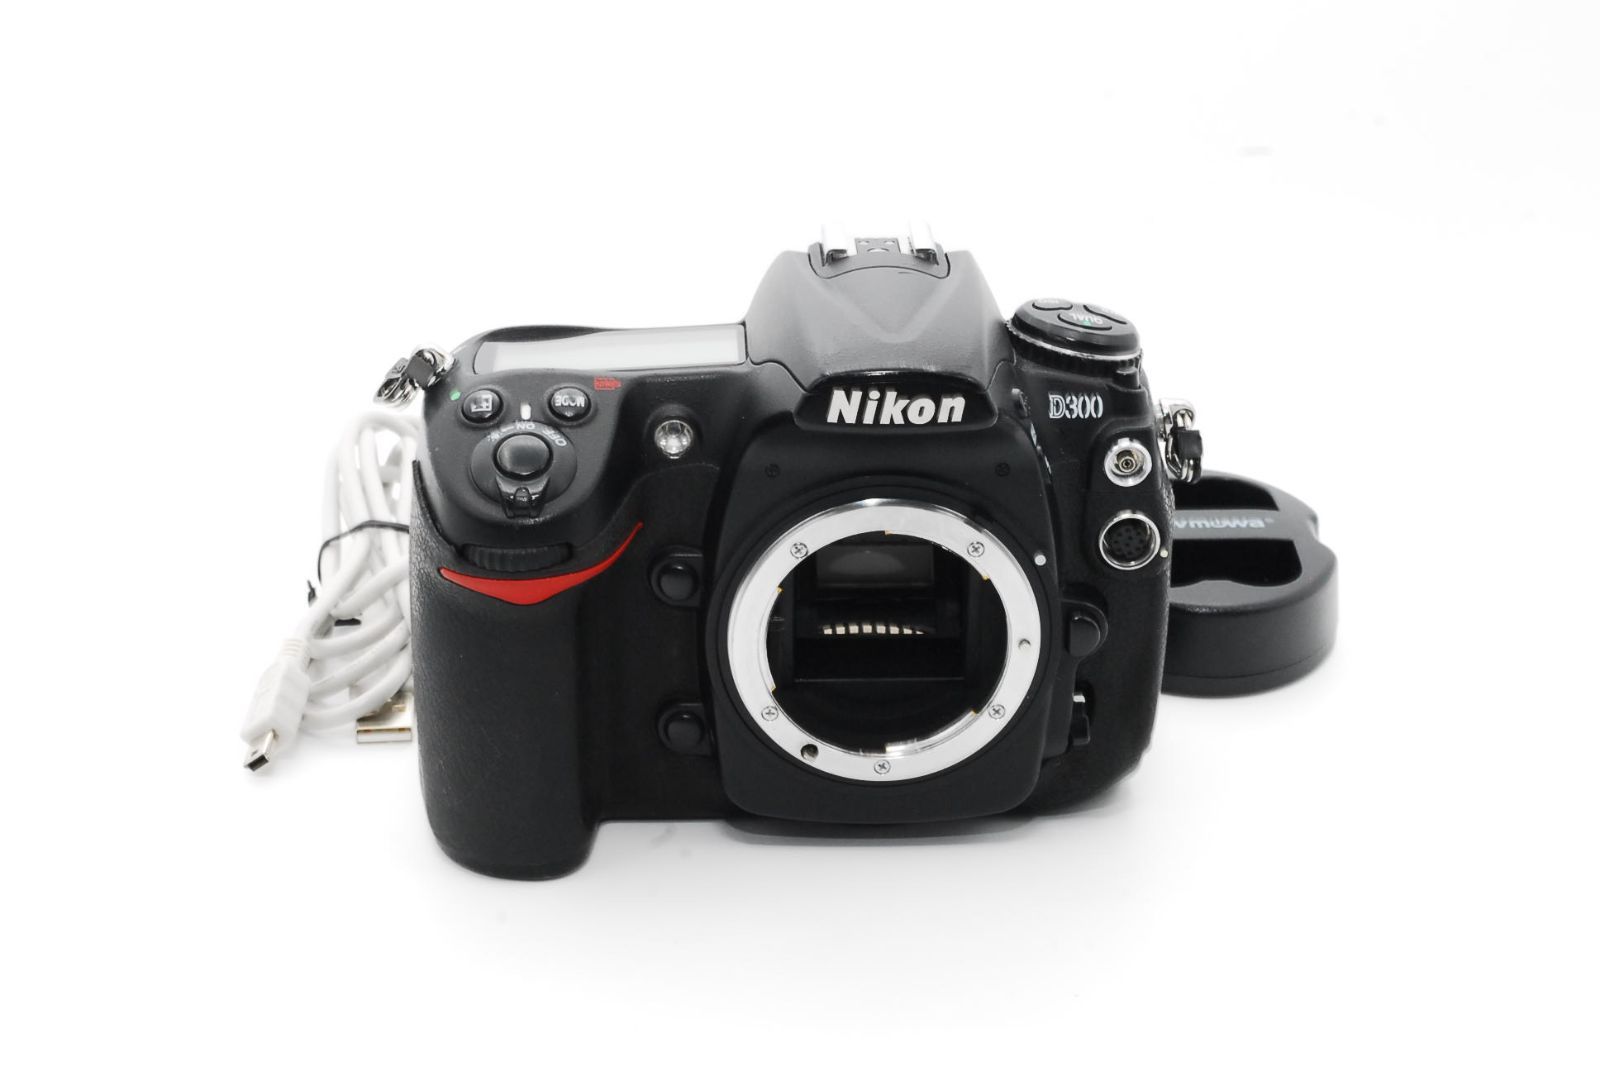 ≪美品≫ Nikon (ニコン) D300 - デジタル一眼レフカメラ #690 - メルカリ